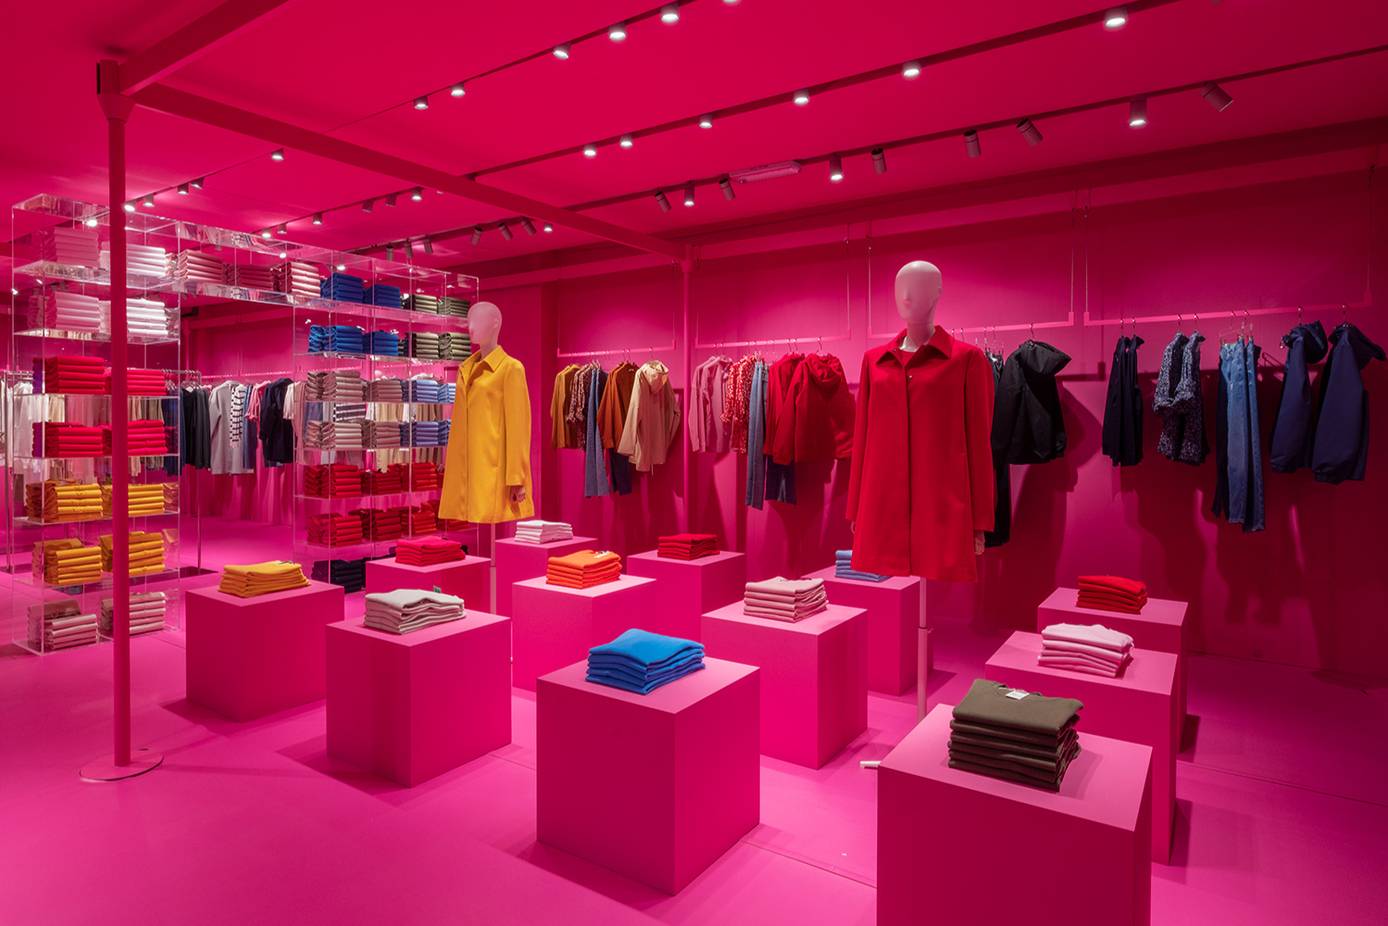 loja de roupas toda pink, com roupas coloridas